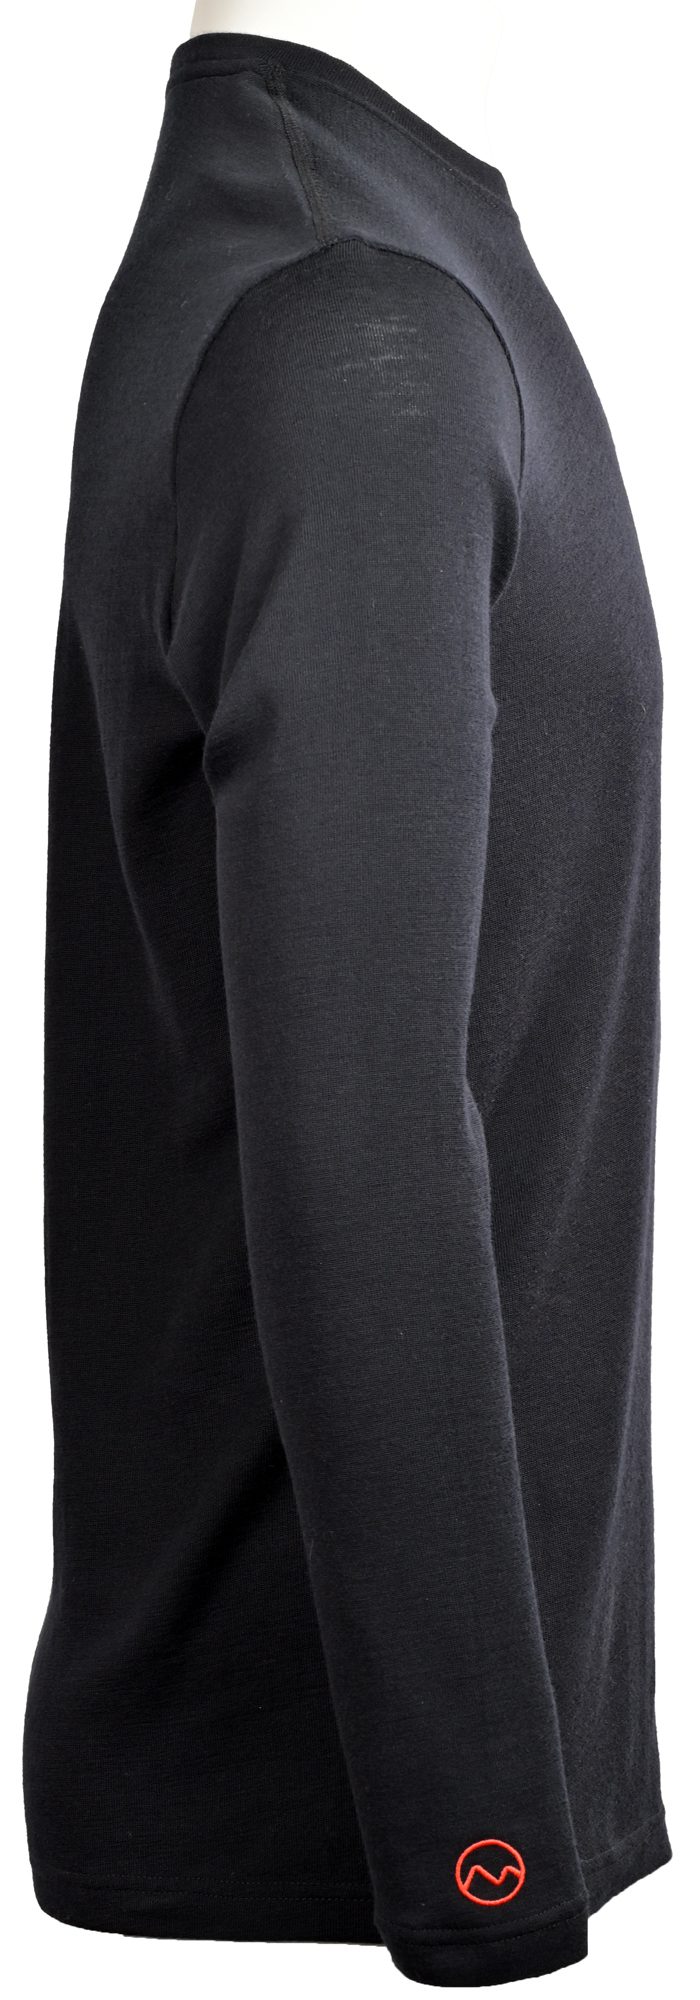 Merino Wool Base Layer for Men - Long Sleeve Shirt - Base Layer